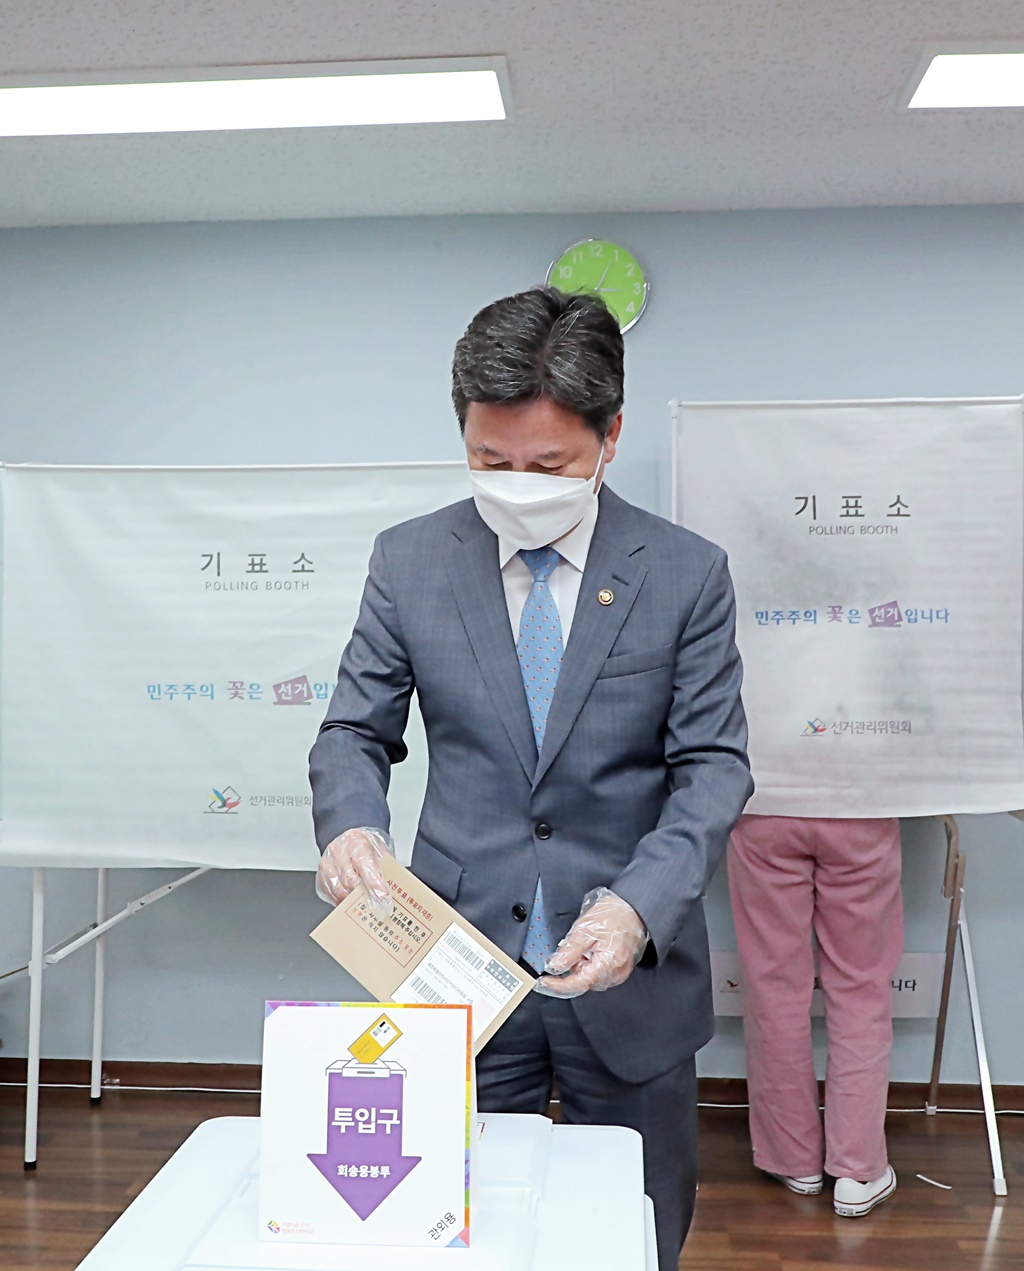 한창섭 행정안전부 차관이 27일 오후 서울시 용산구 남영동 주민센터에 마련된 '제8회 전국동시지방선거' 사전투표소를 찾아 투표하고 있다.